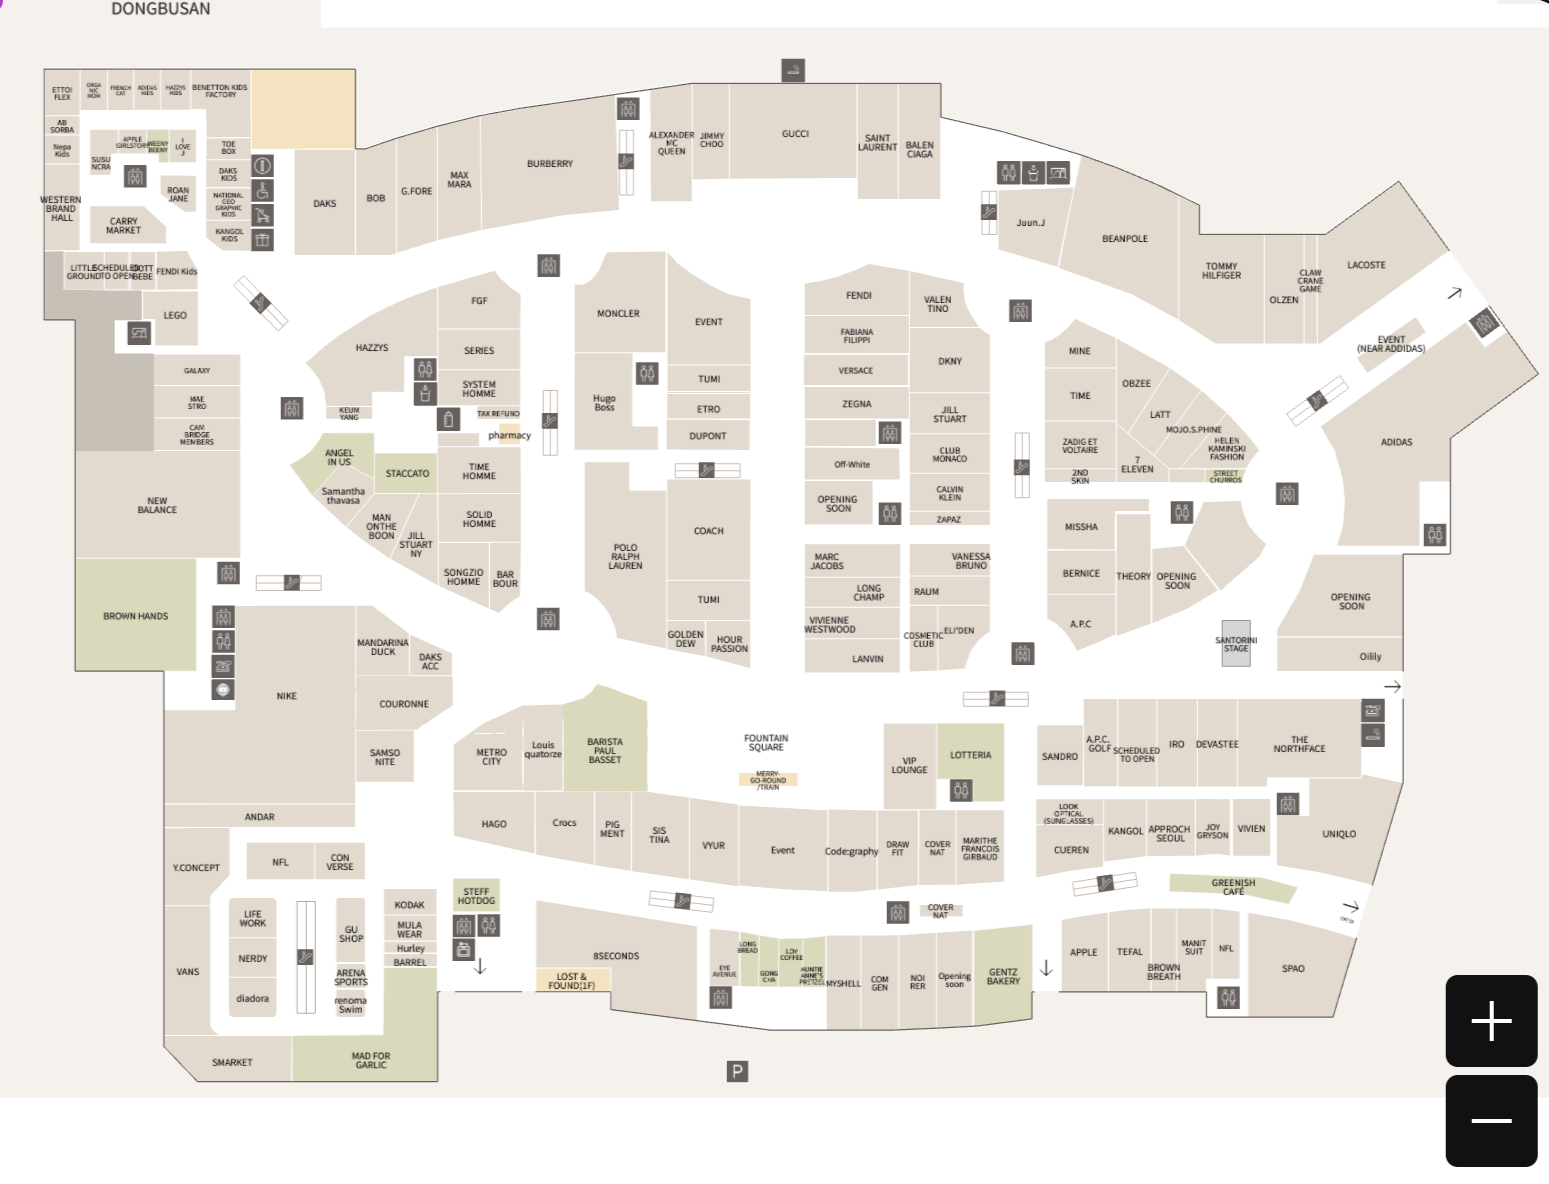 《釜山樂天OUTLET》Lotte Mall 交通方式，必買品牌與樓層地圖